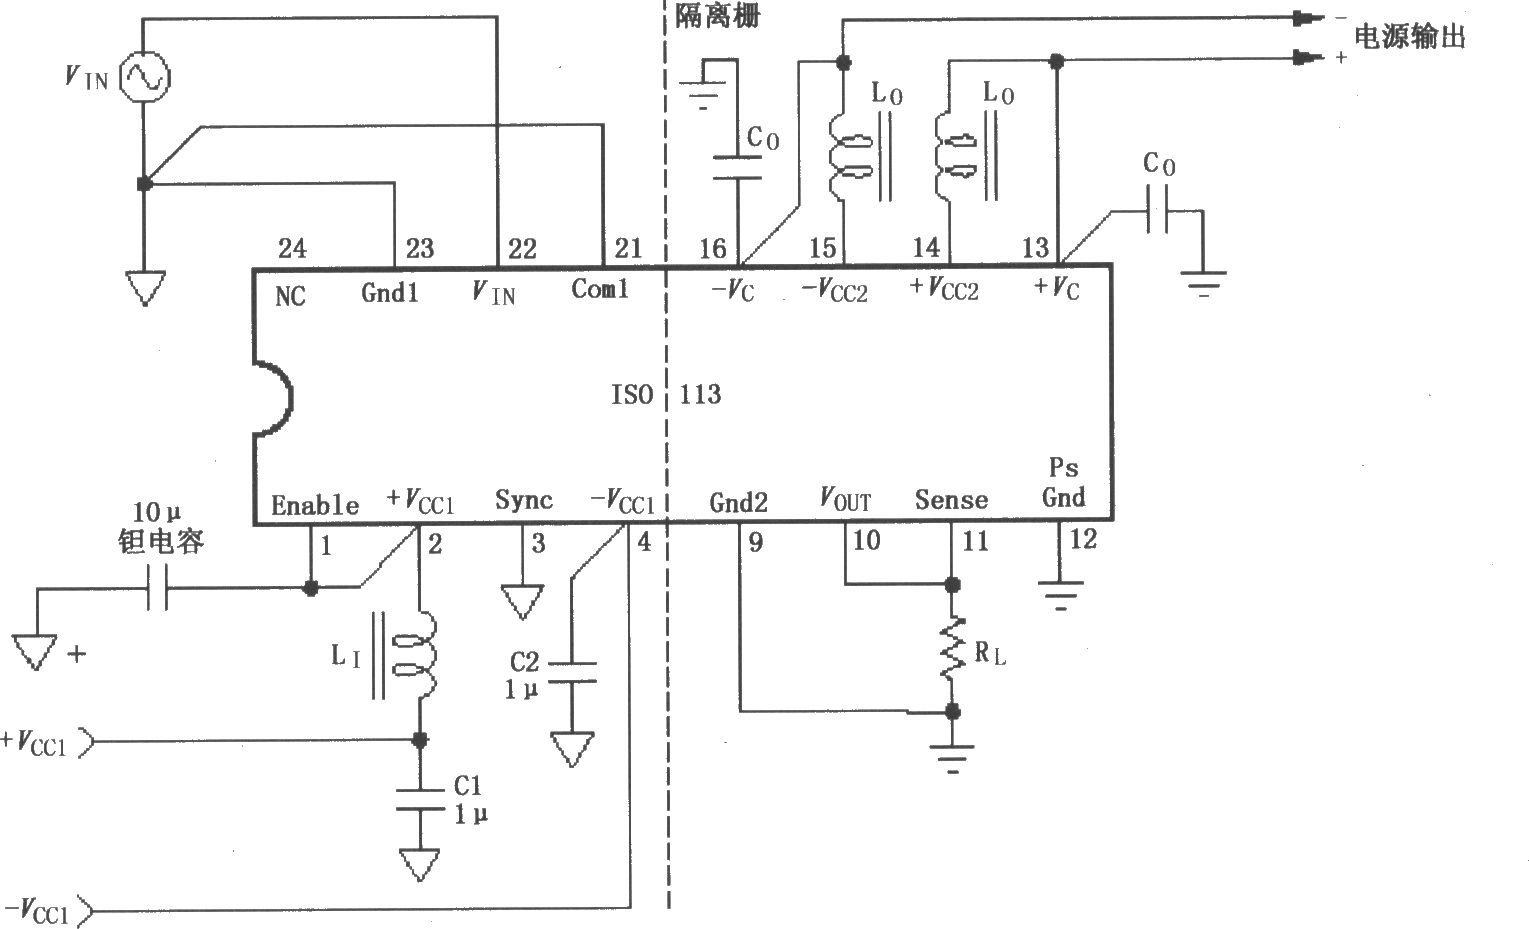 ISOll3信号与电源的基本连接电路